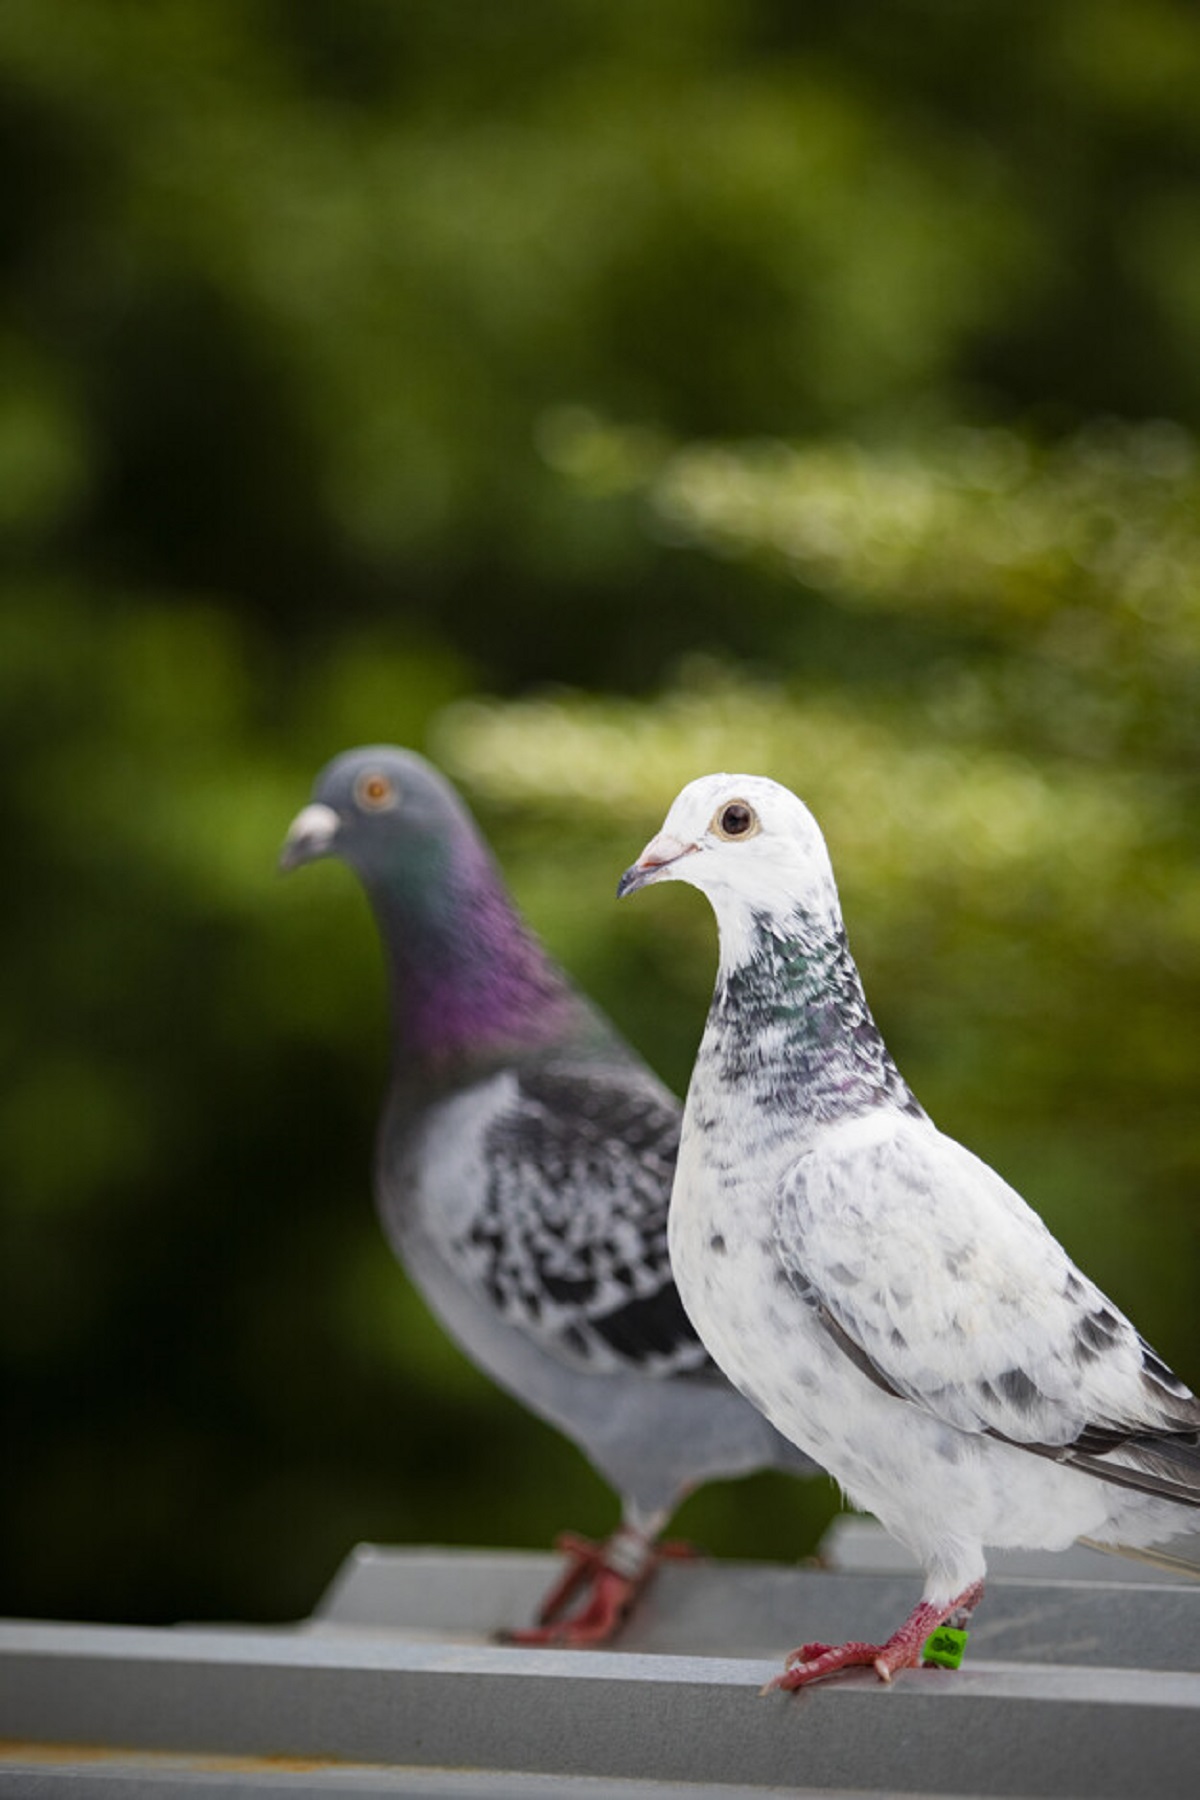 طيور الحمام: ما هو الحل الطبيعي لإبعادها عن منزلكم وشرفتكم ؟ Pigeon